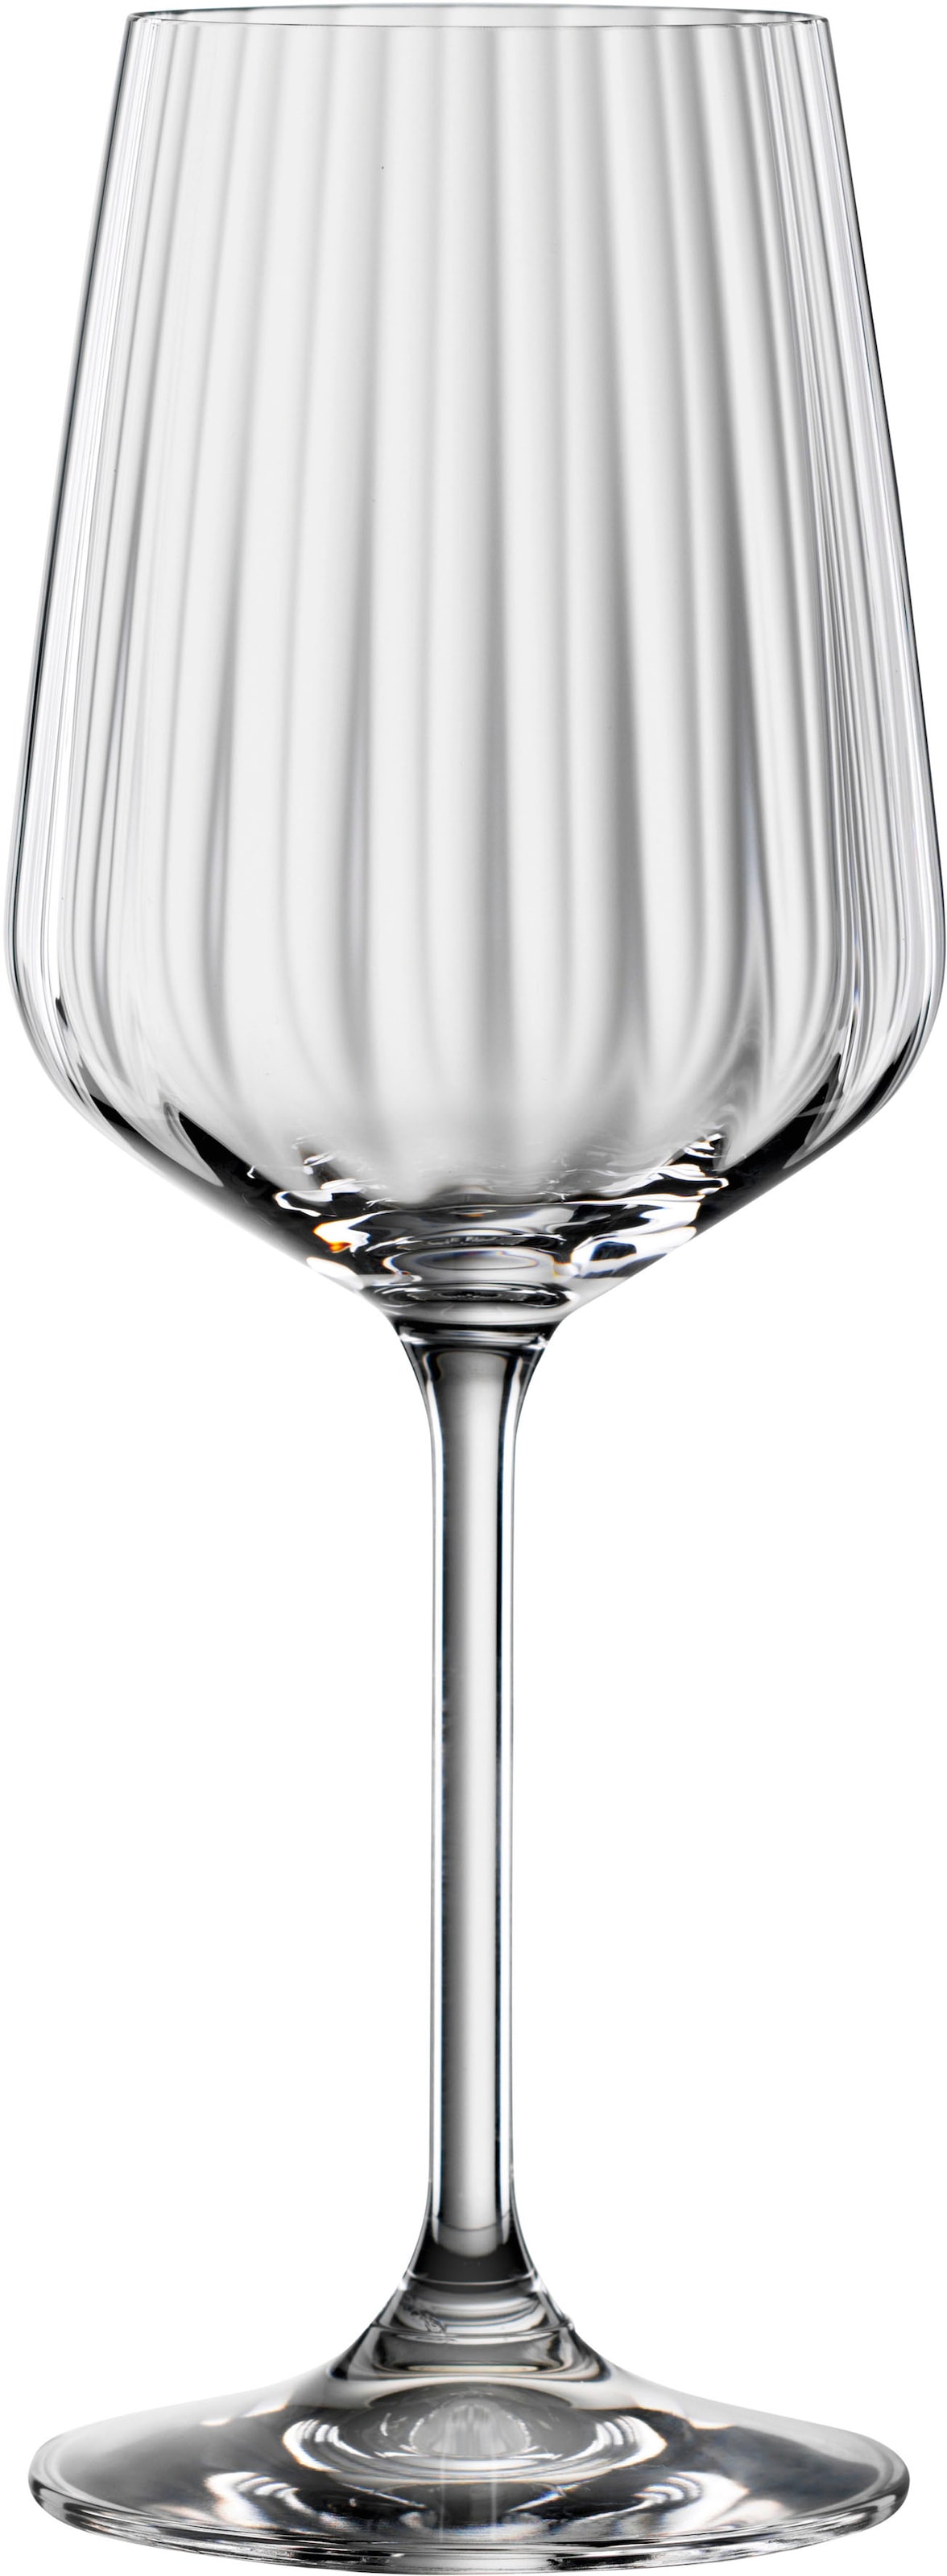 SPIEGELAU Weißweinglas »LifeStyle«, (Set, 4 tlg., Set bestehend aus 4 Gläsern), 440 ml, 4-teilig